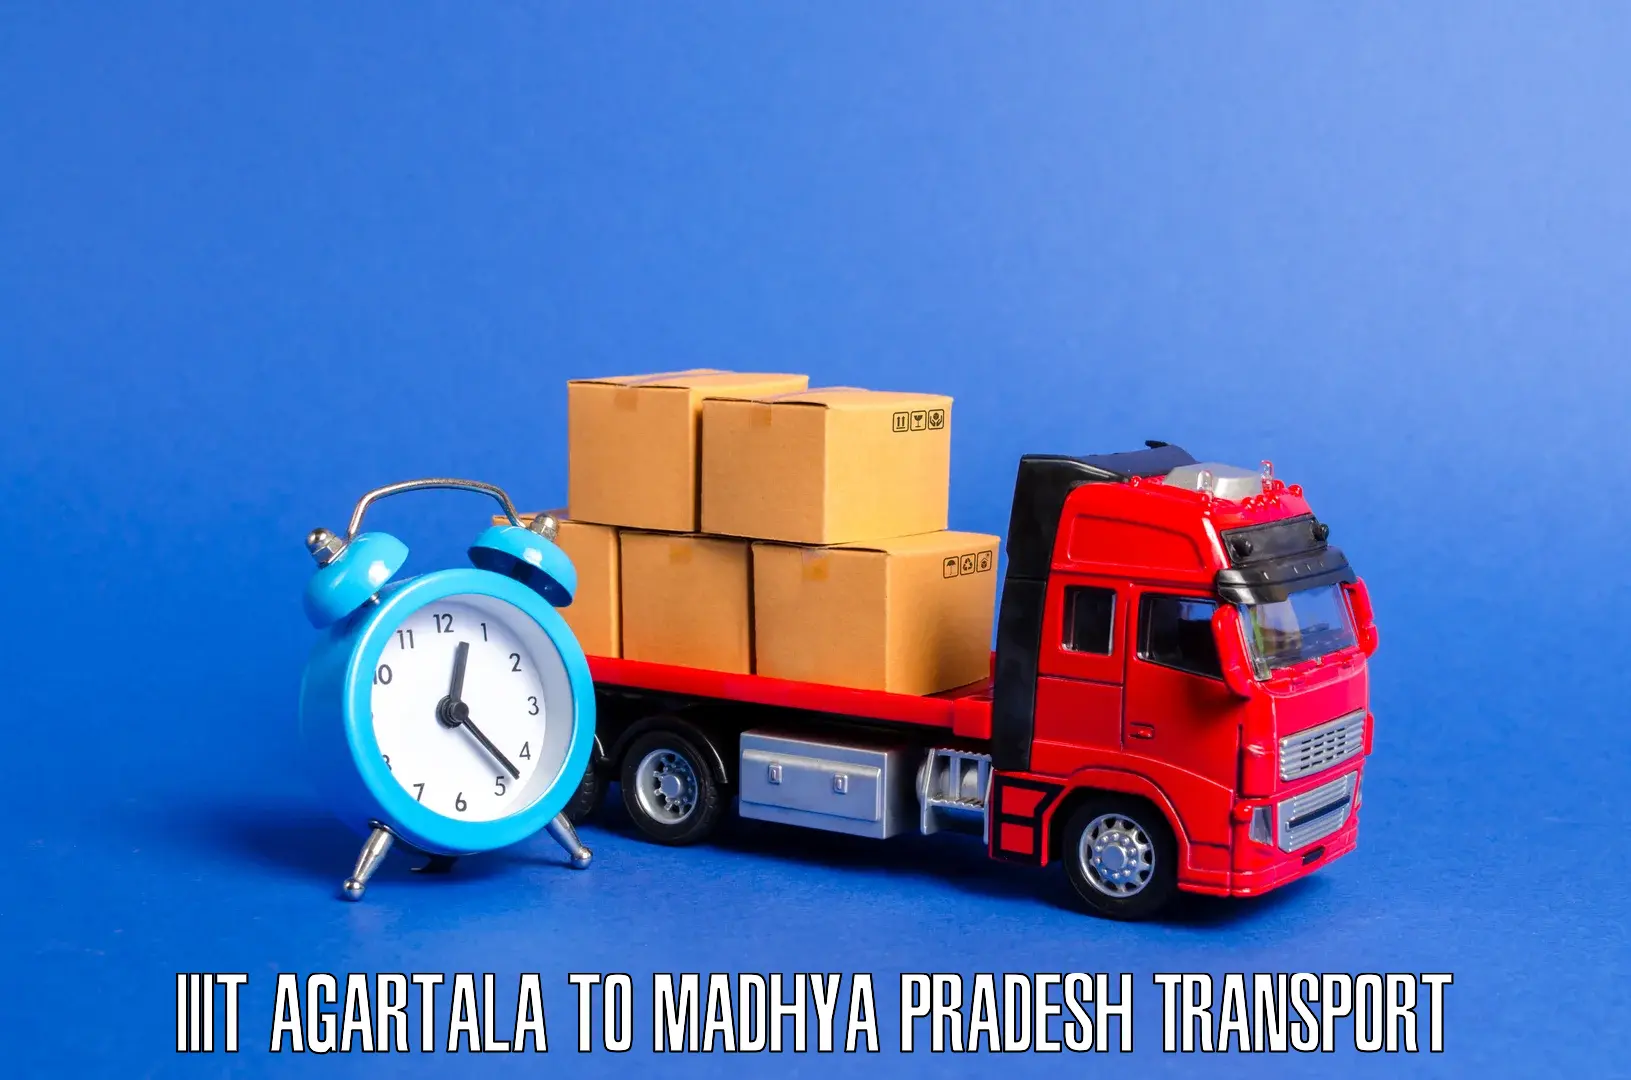 Inland transportation services IIIT Agartala to Ashta